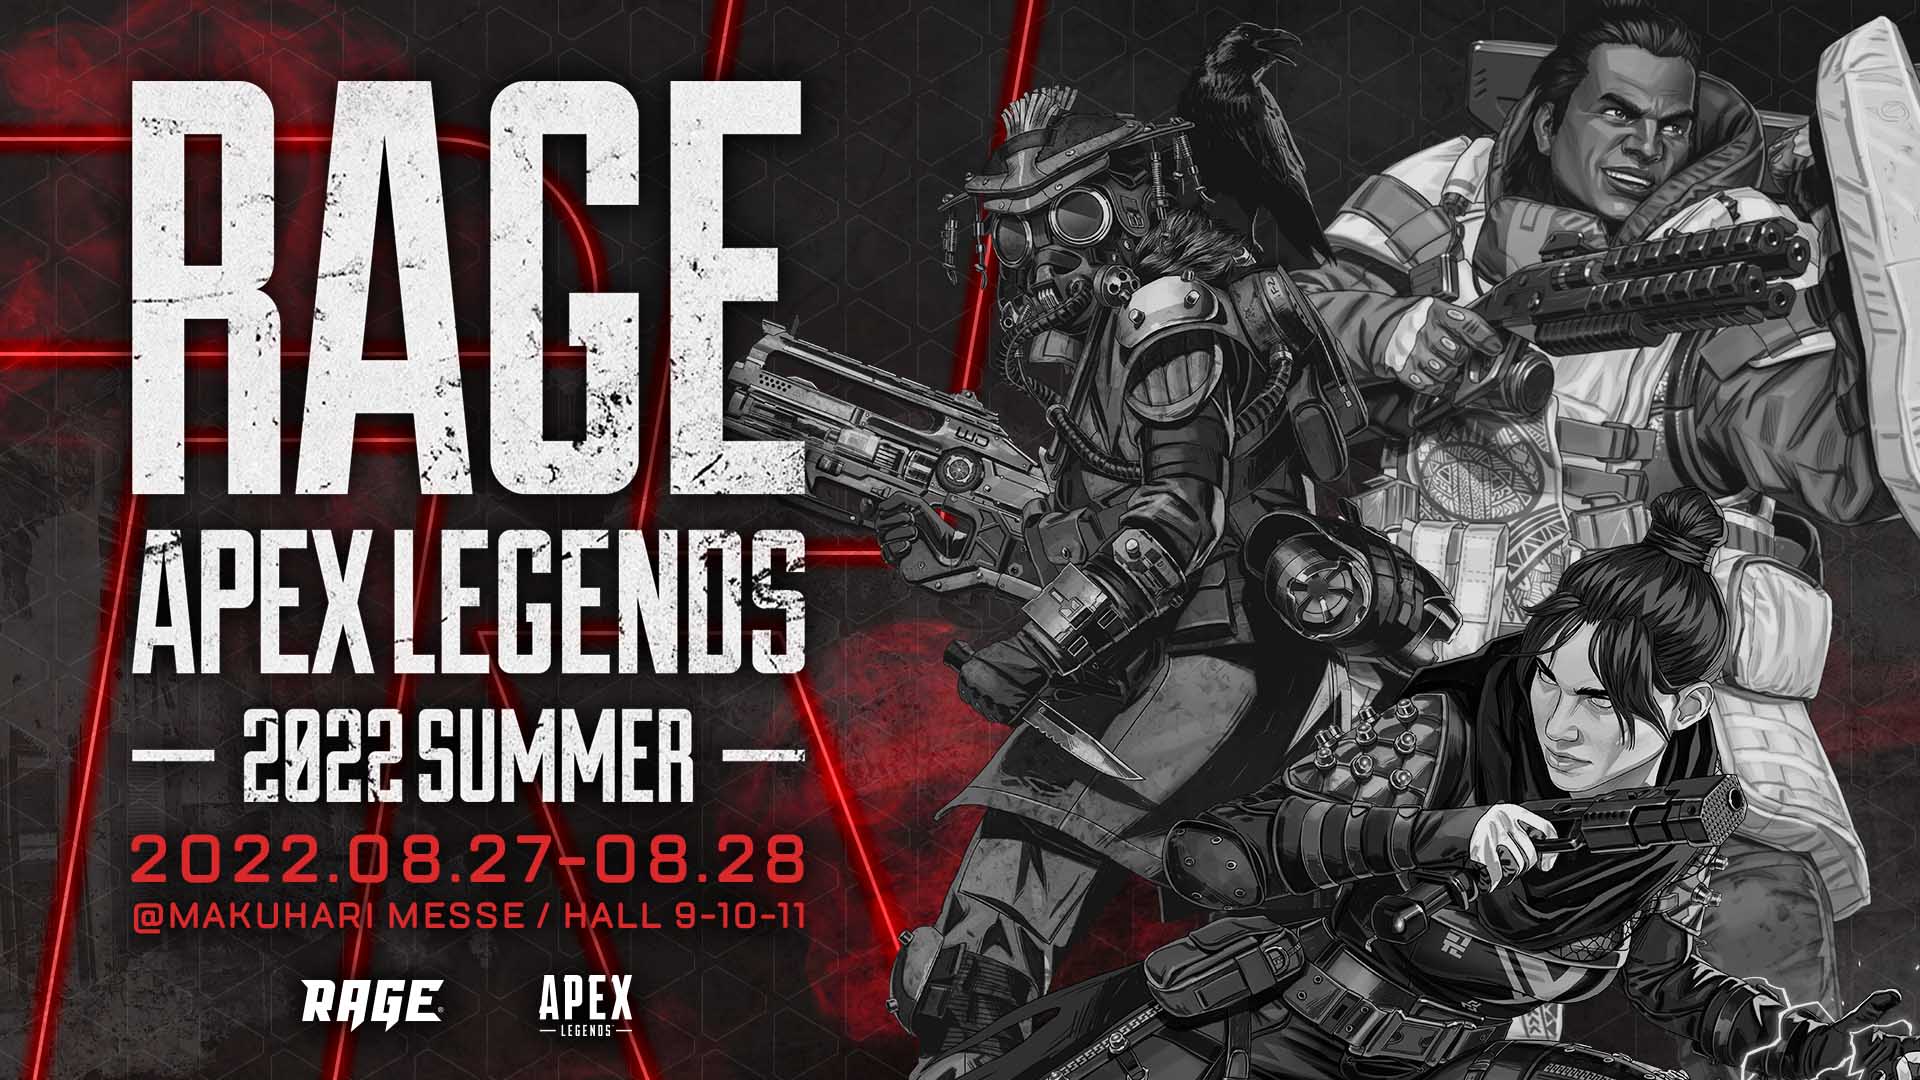 RAGE Apex Legends 2022 Summer